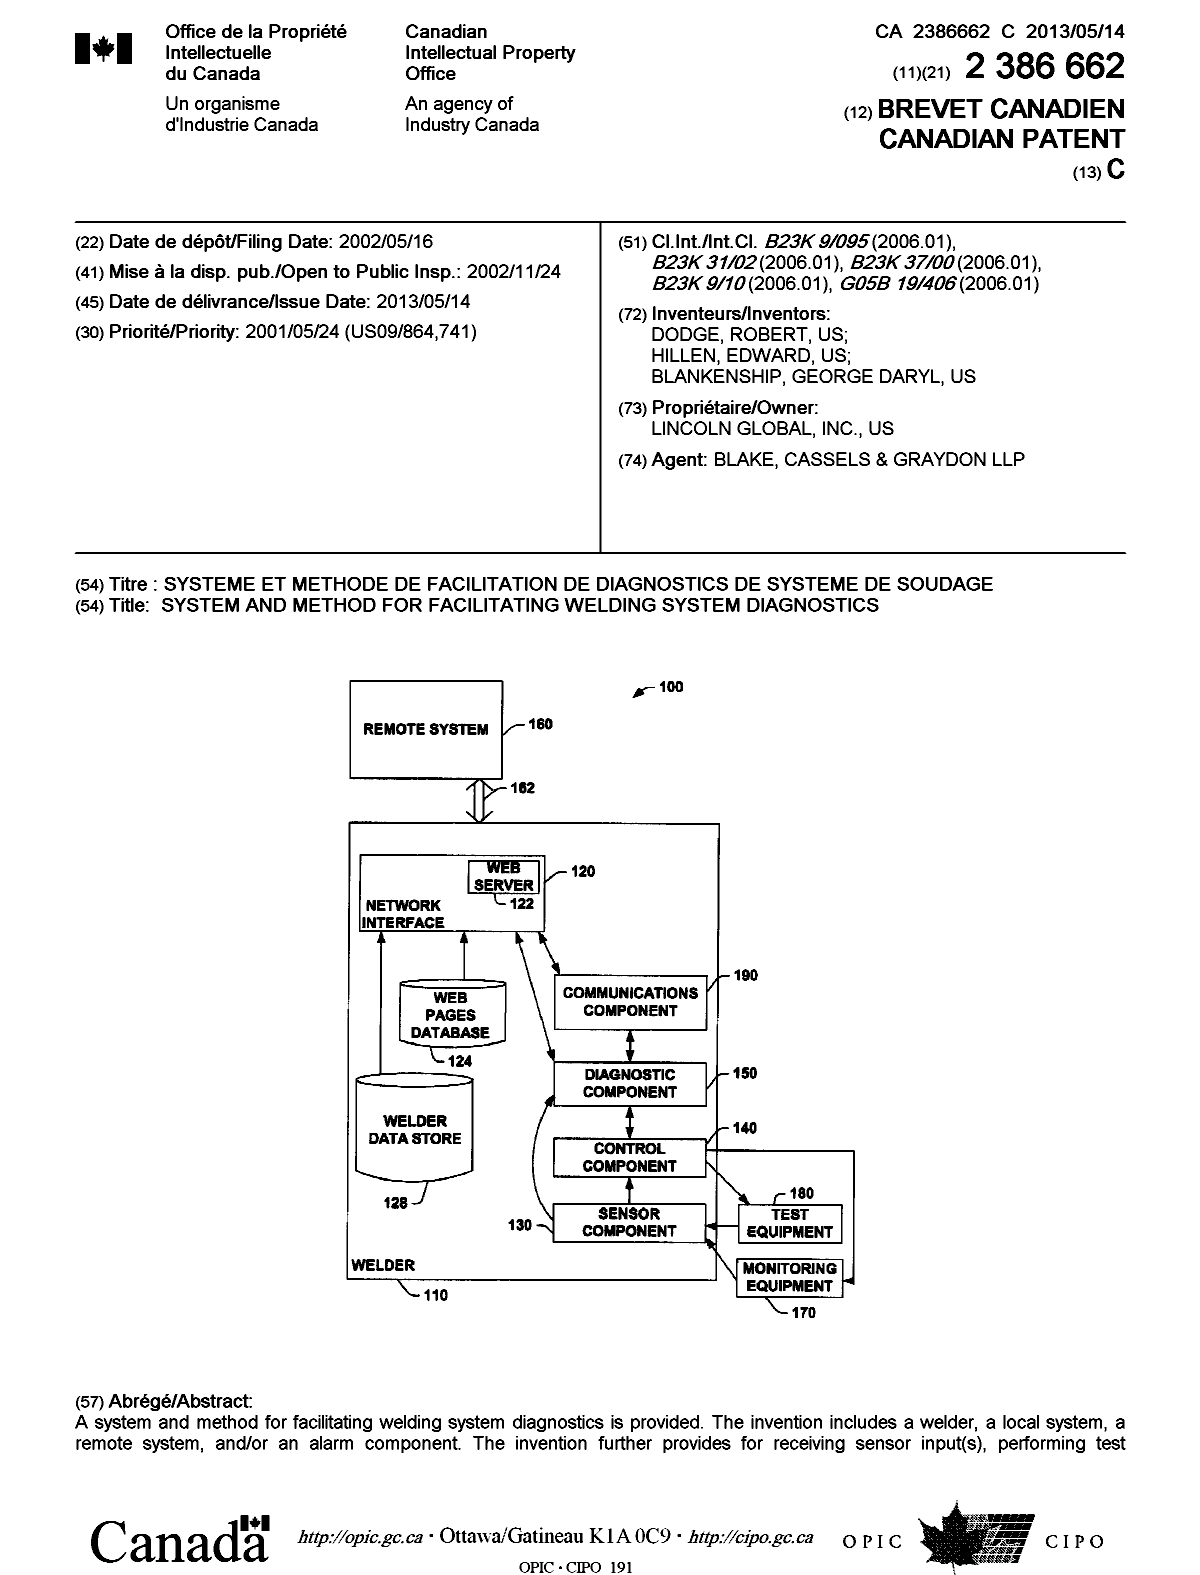 Document de brevet canadien 2386662. Page couverture 20130424. Image 1 de 2